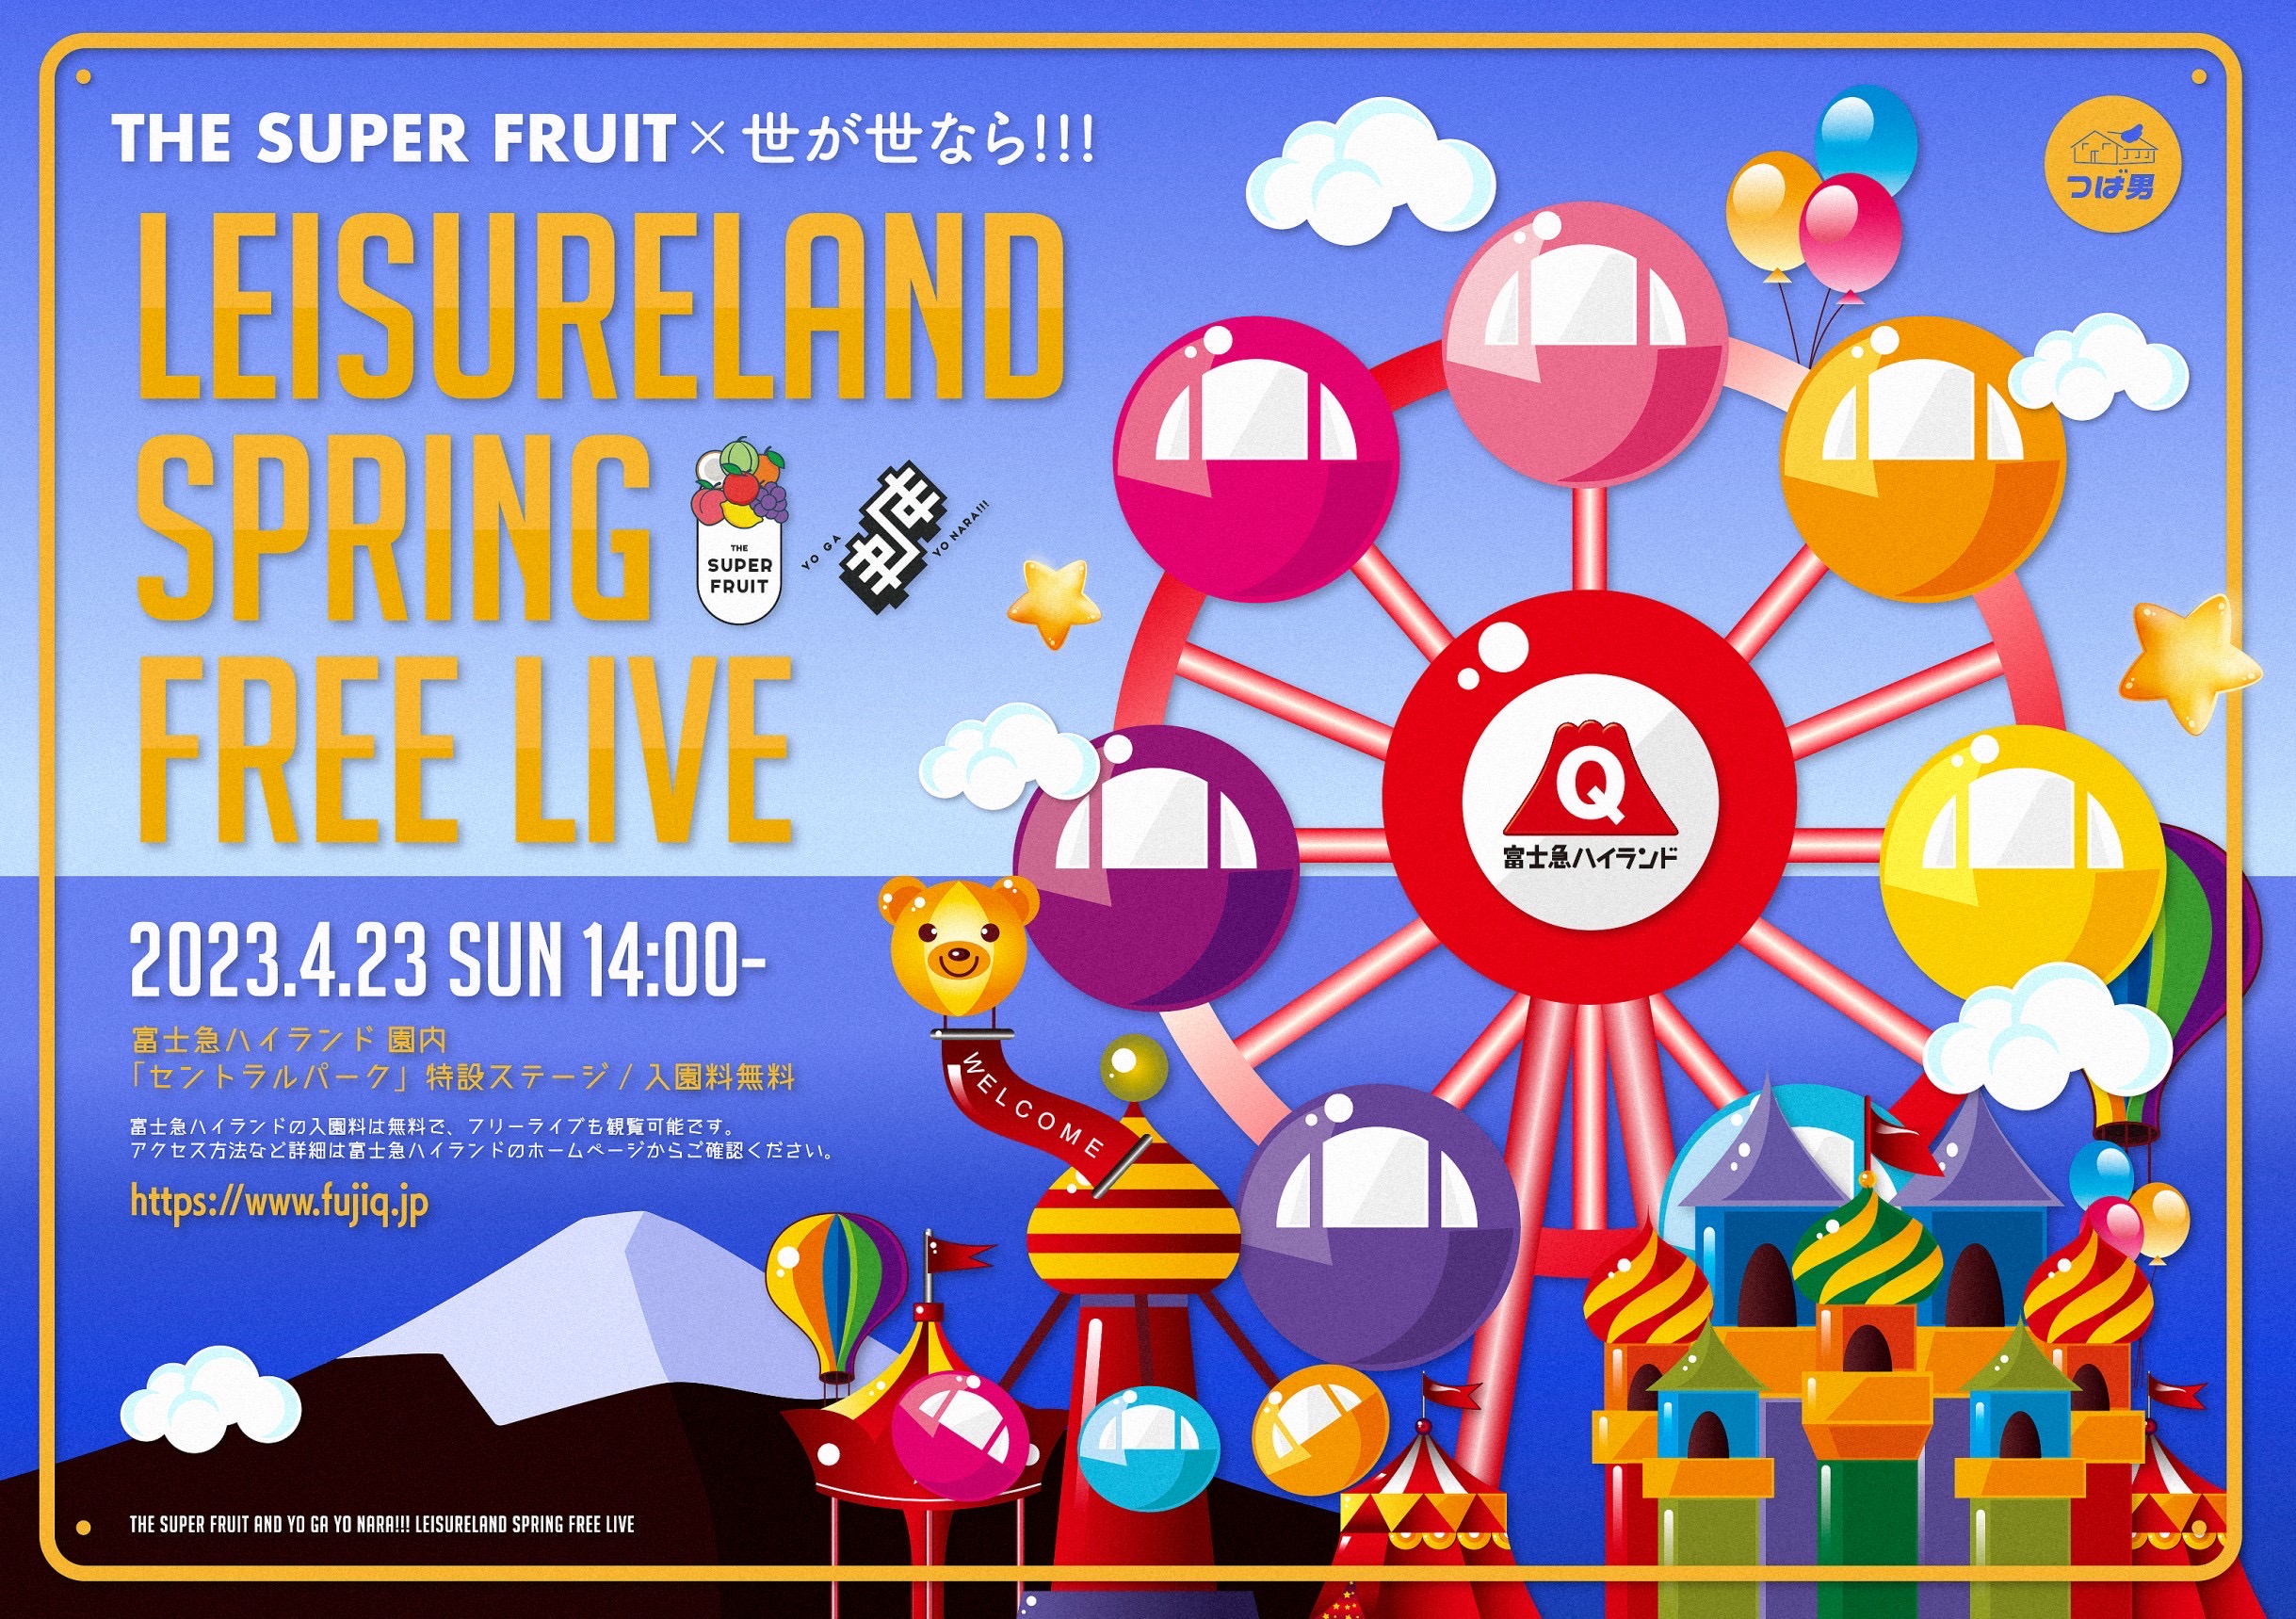 【NEWS】4/23(日)「THE SUPER FRUIT × 世が世なら!!! LEISURELAND SPRING FREE LIVE in 富士急ハイランド -あつまれ今だけスパ世がランド-」開催決定！！